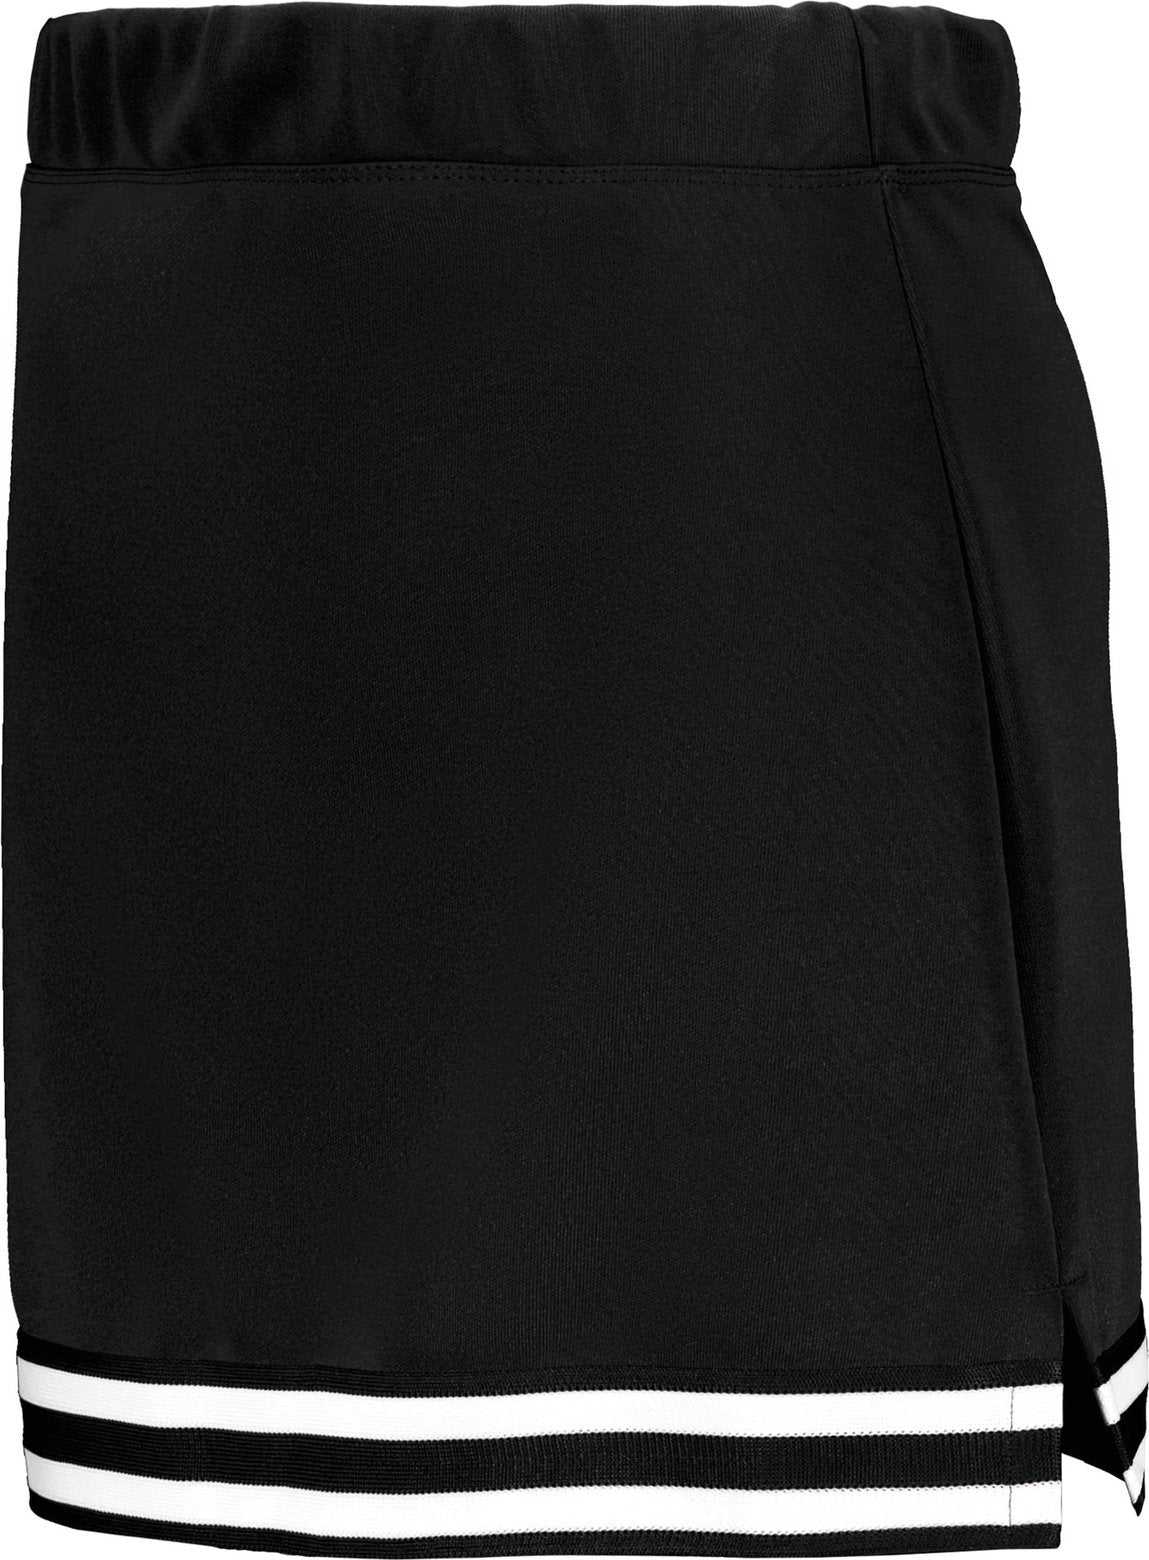 Augusta 6926 Girls Cheer Squad Skirt - Black Black White - HIT a Double